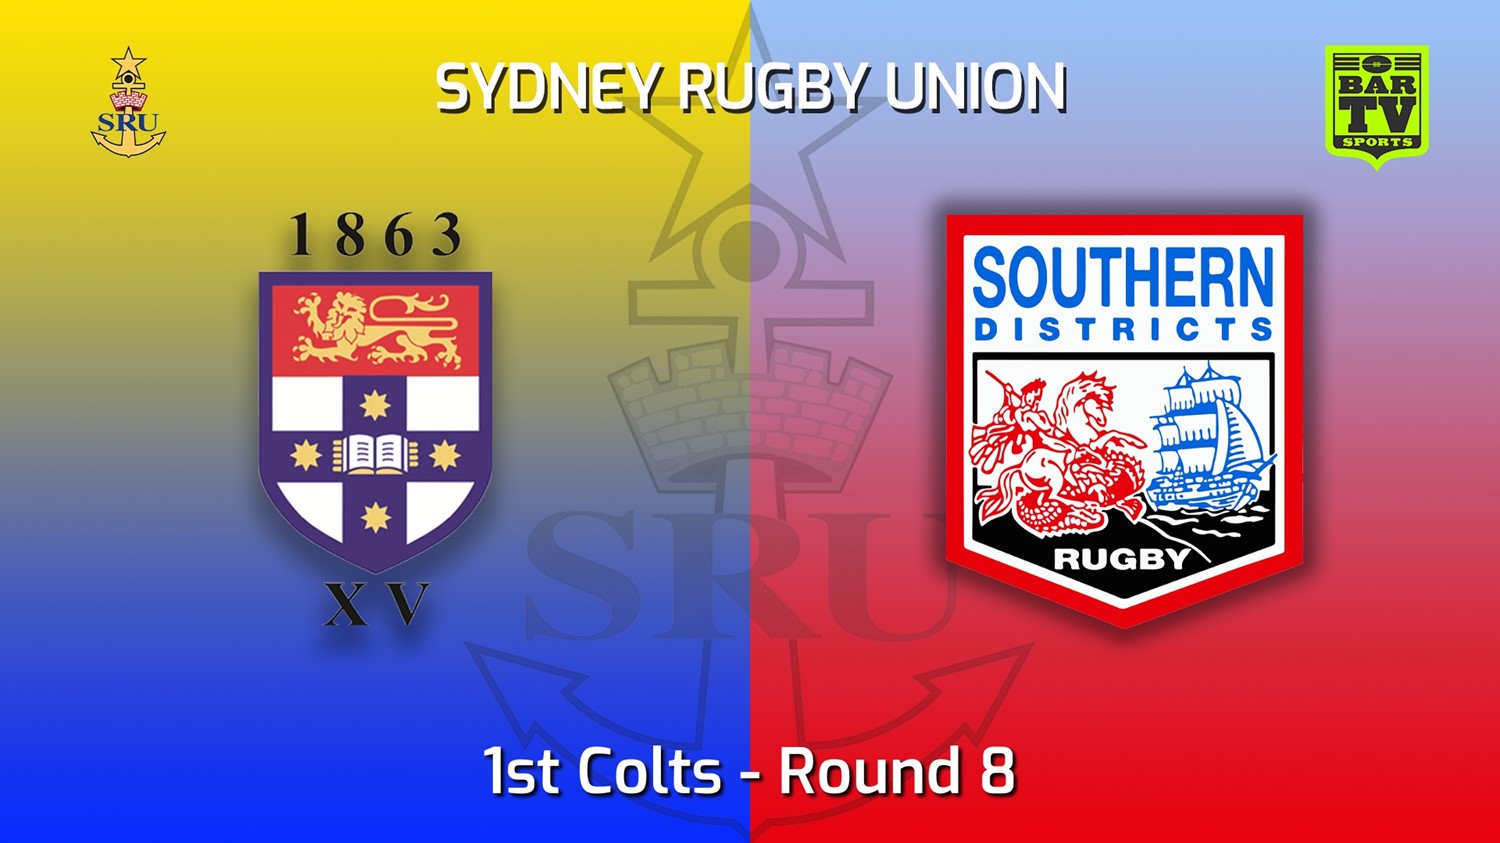 220521-Sydney Rugby Union Round 8 - 1st Colts - Sydney University v Southern Districts Slate Image